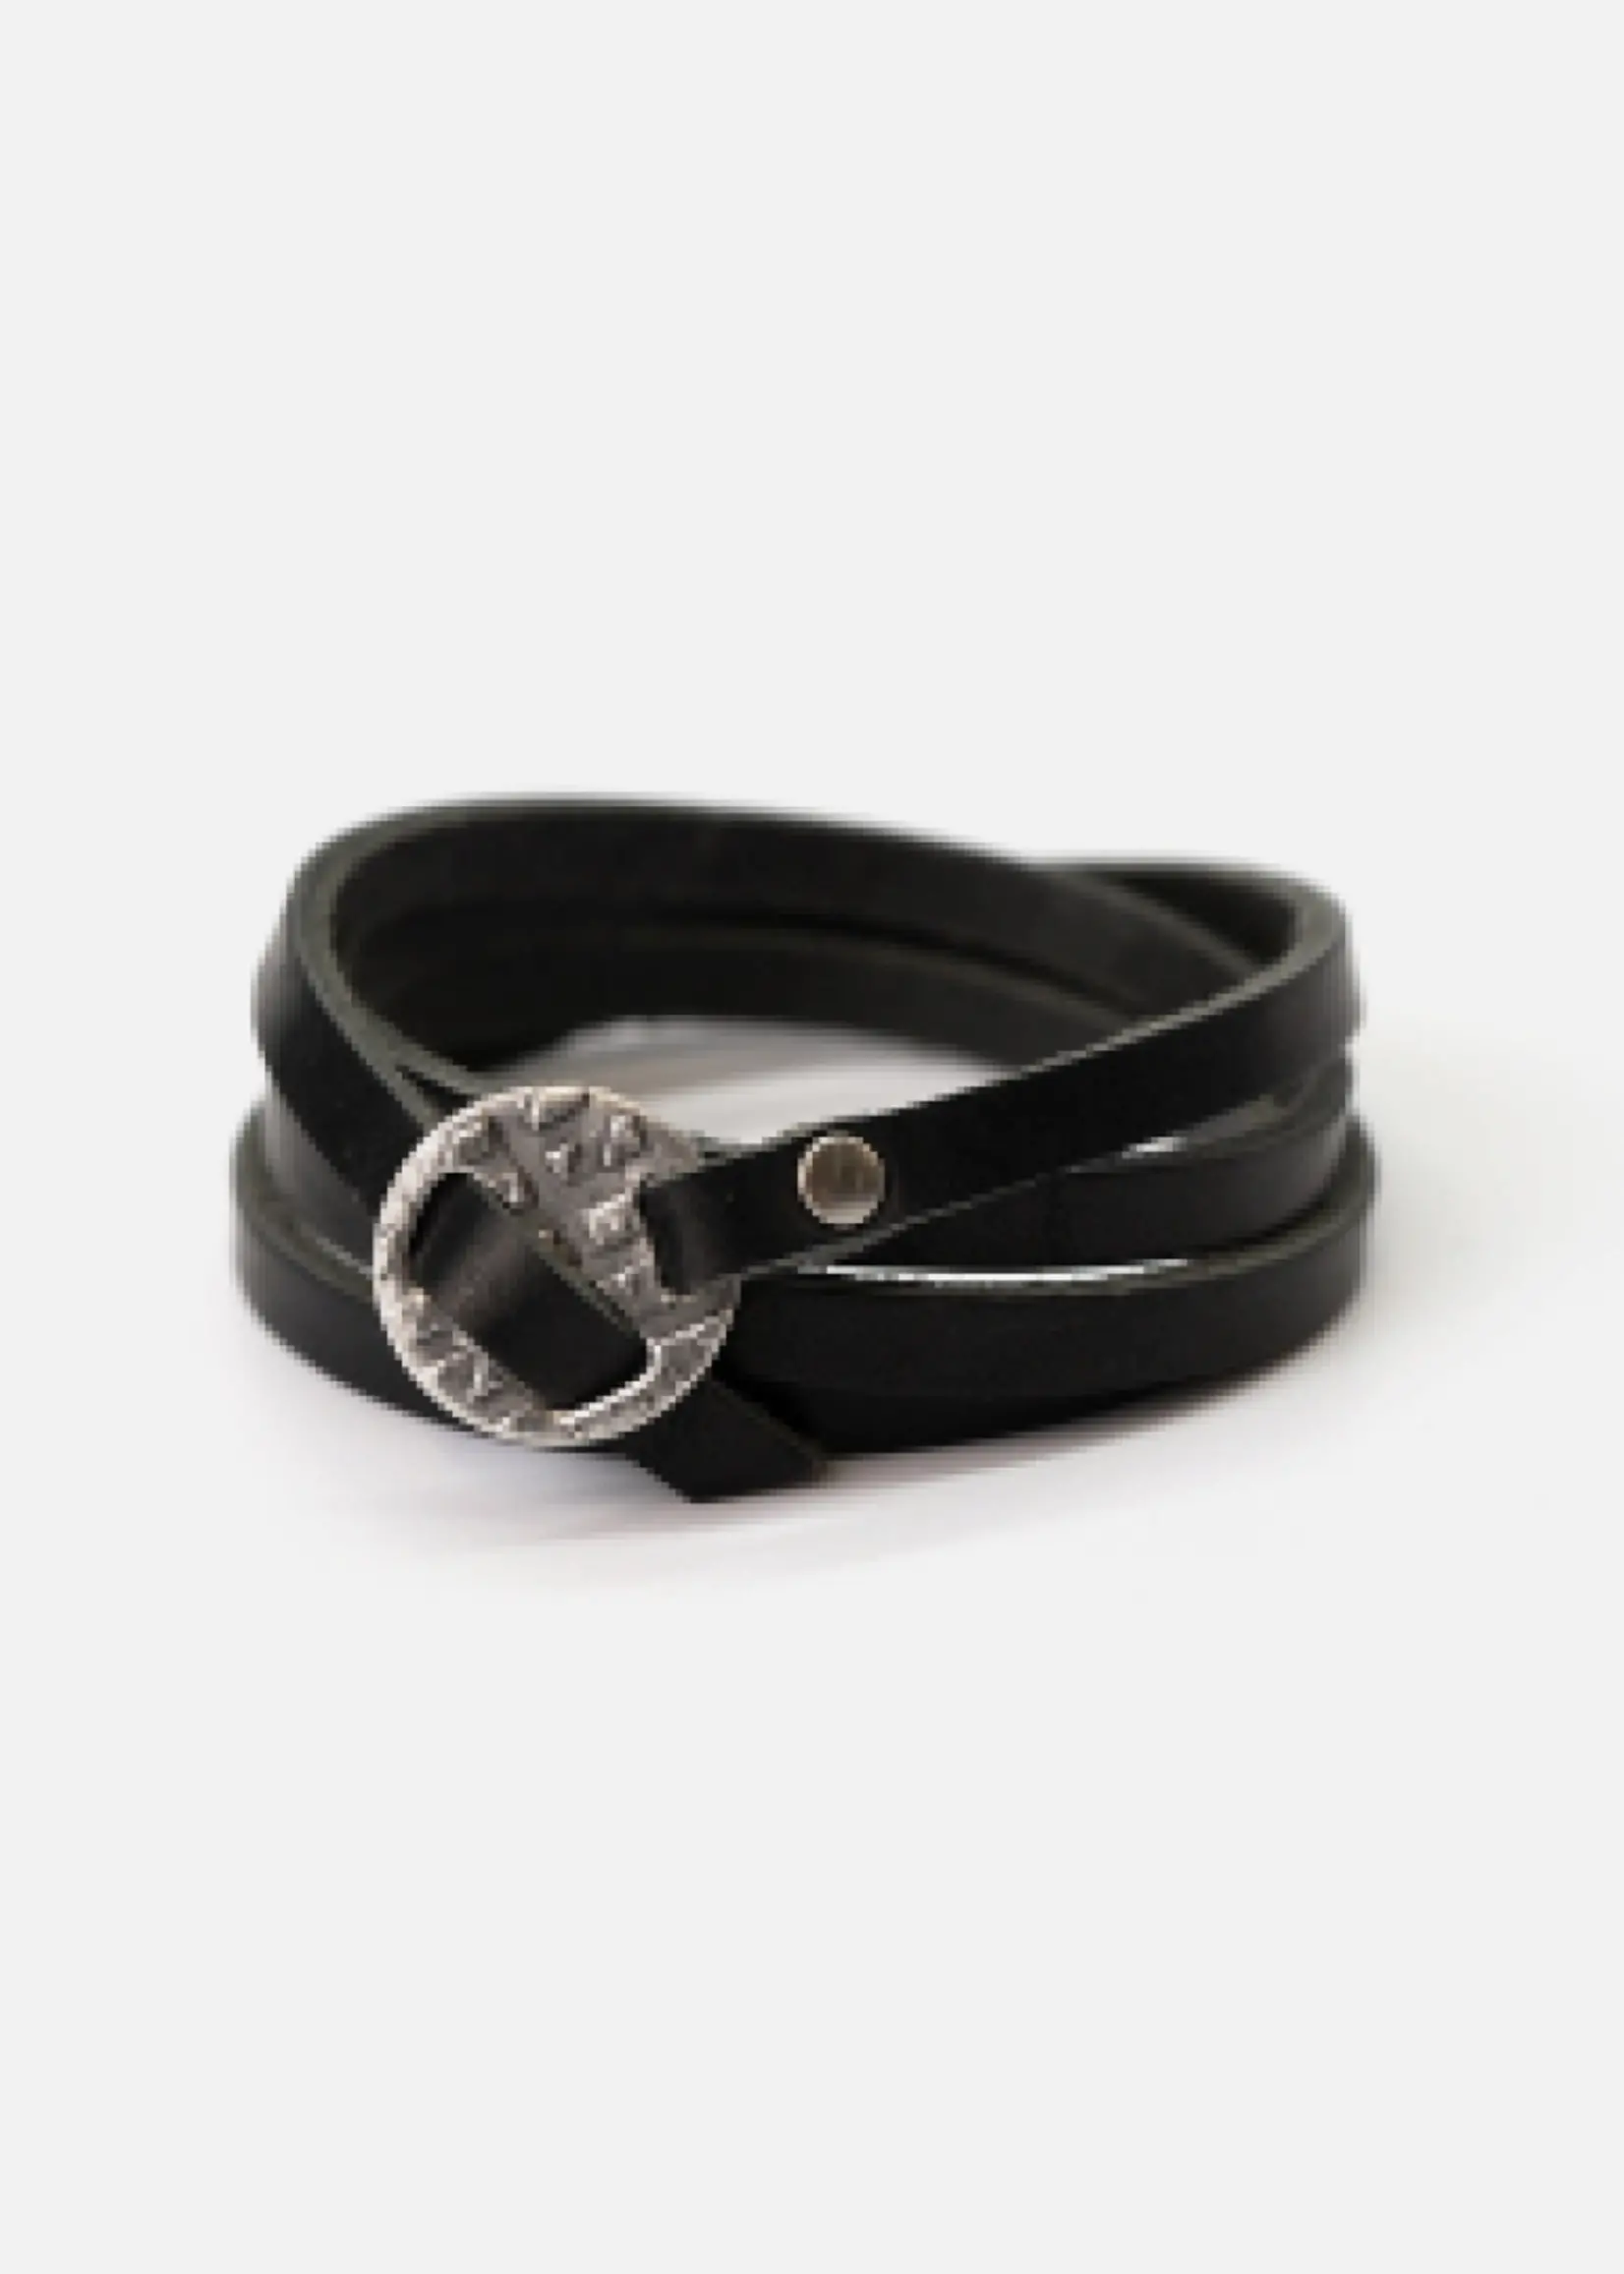 Range Leather Co. Whitney Wrap Bracelet